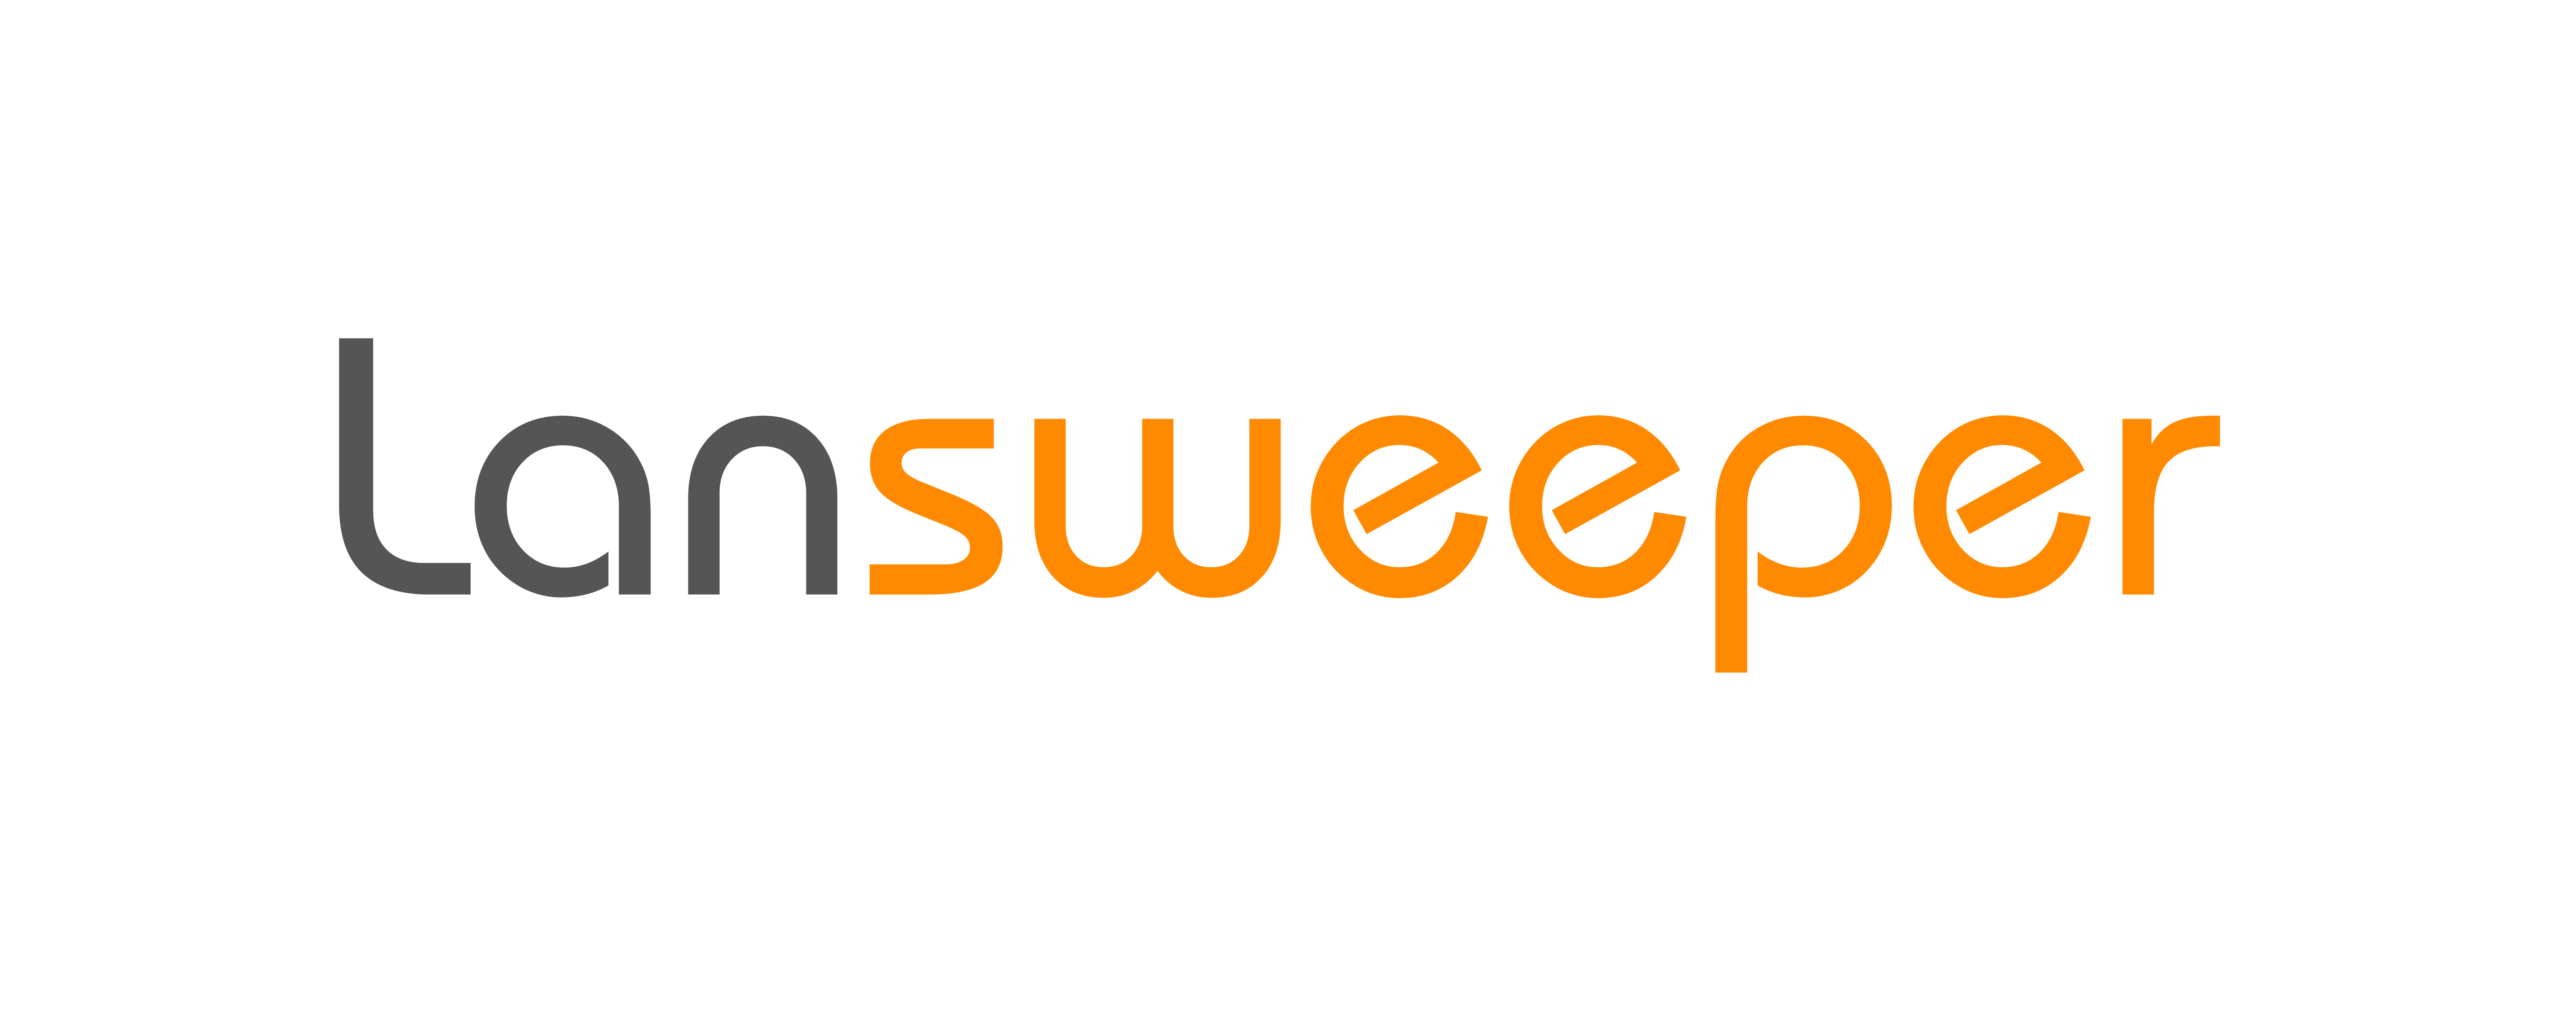 Lansweeper-Full-Logo-Grey-01.png